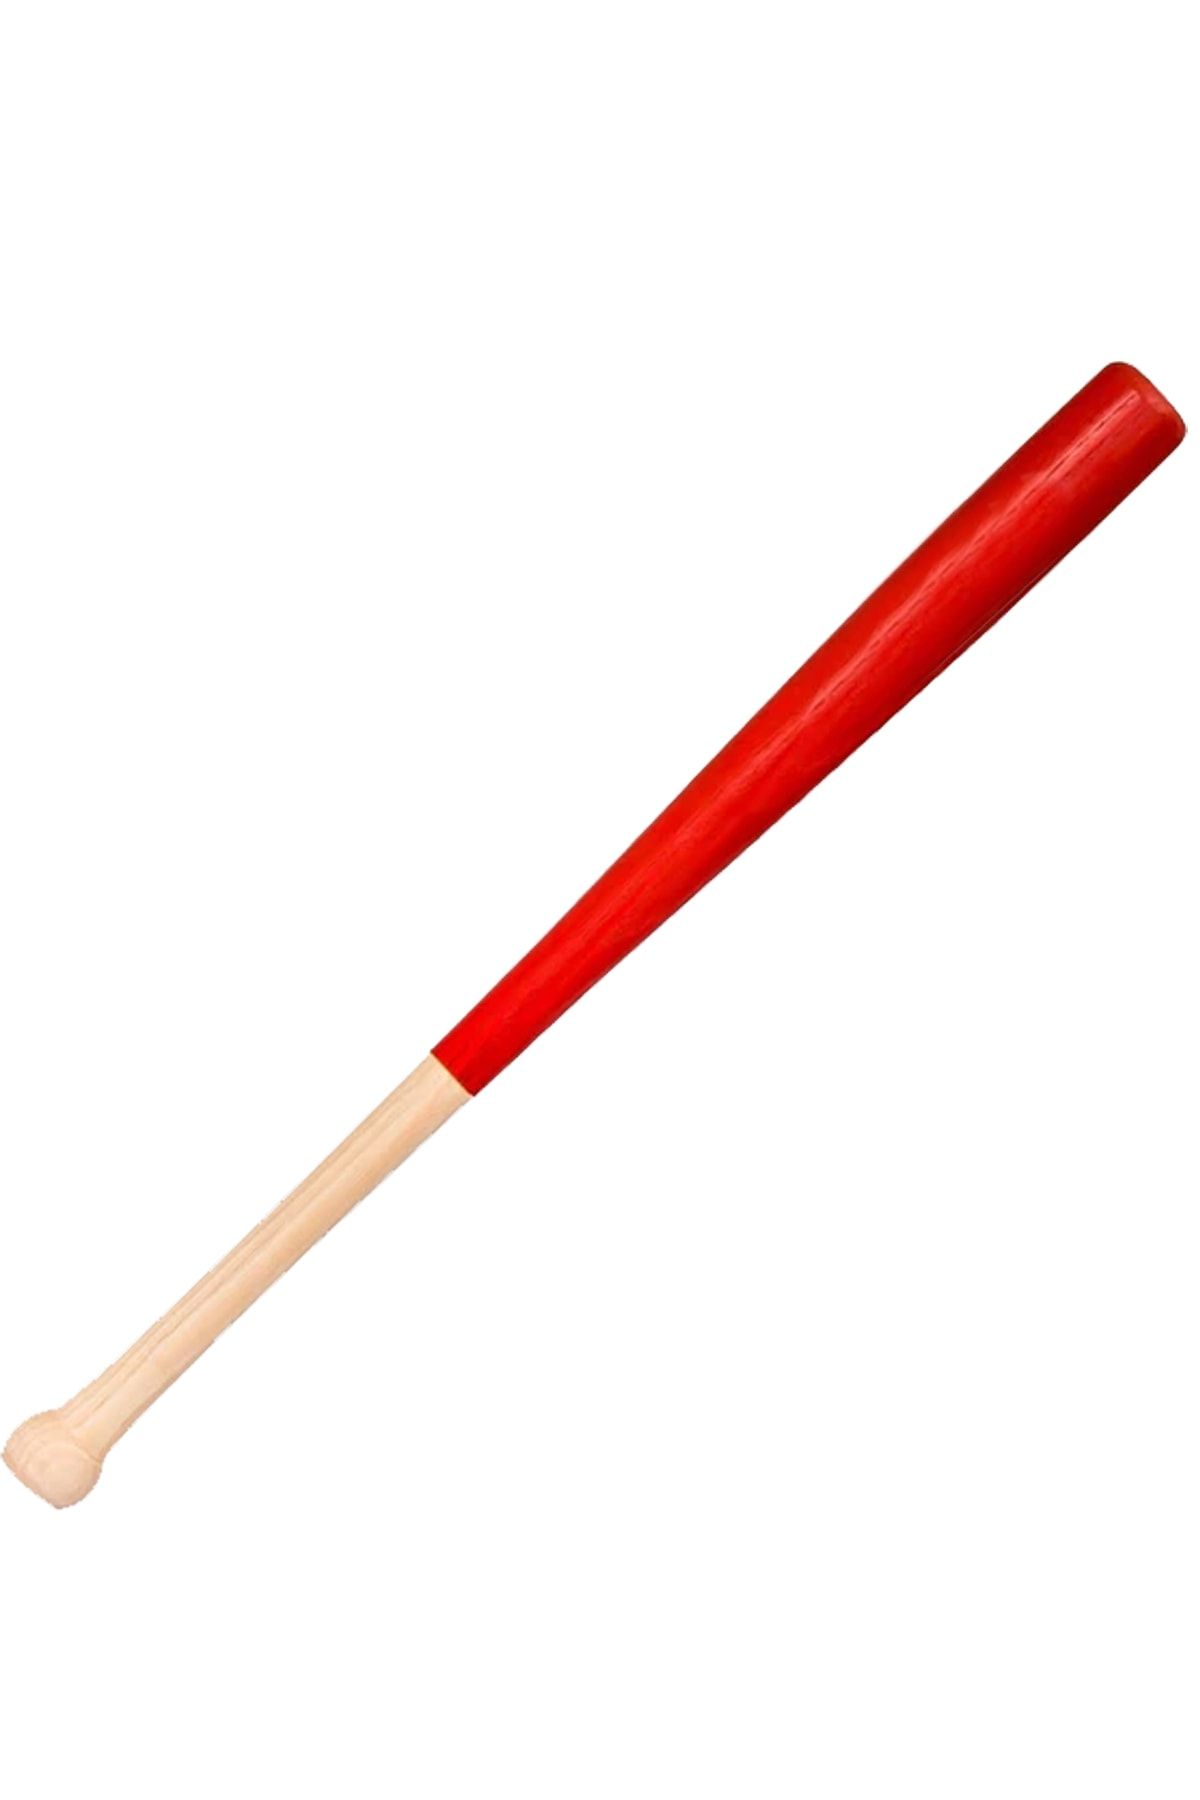 Genel Markalar Beyzbol Sopası 61 Cm Beyzbol Sopası Baseball Bat 4 Renk Seçenekli - Kırmızı